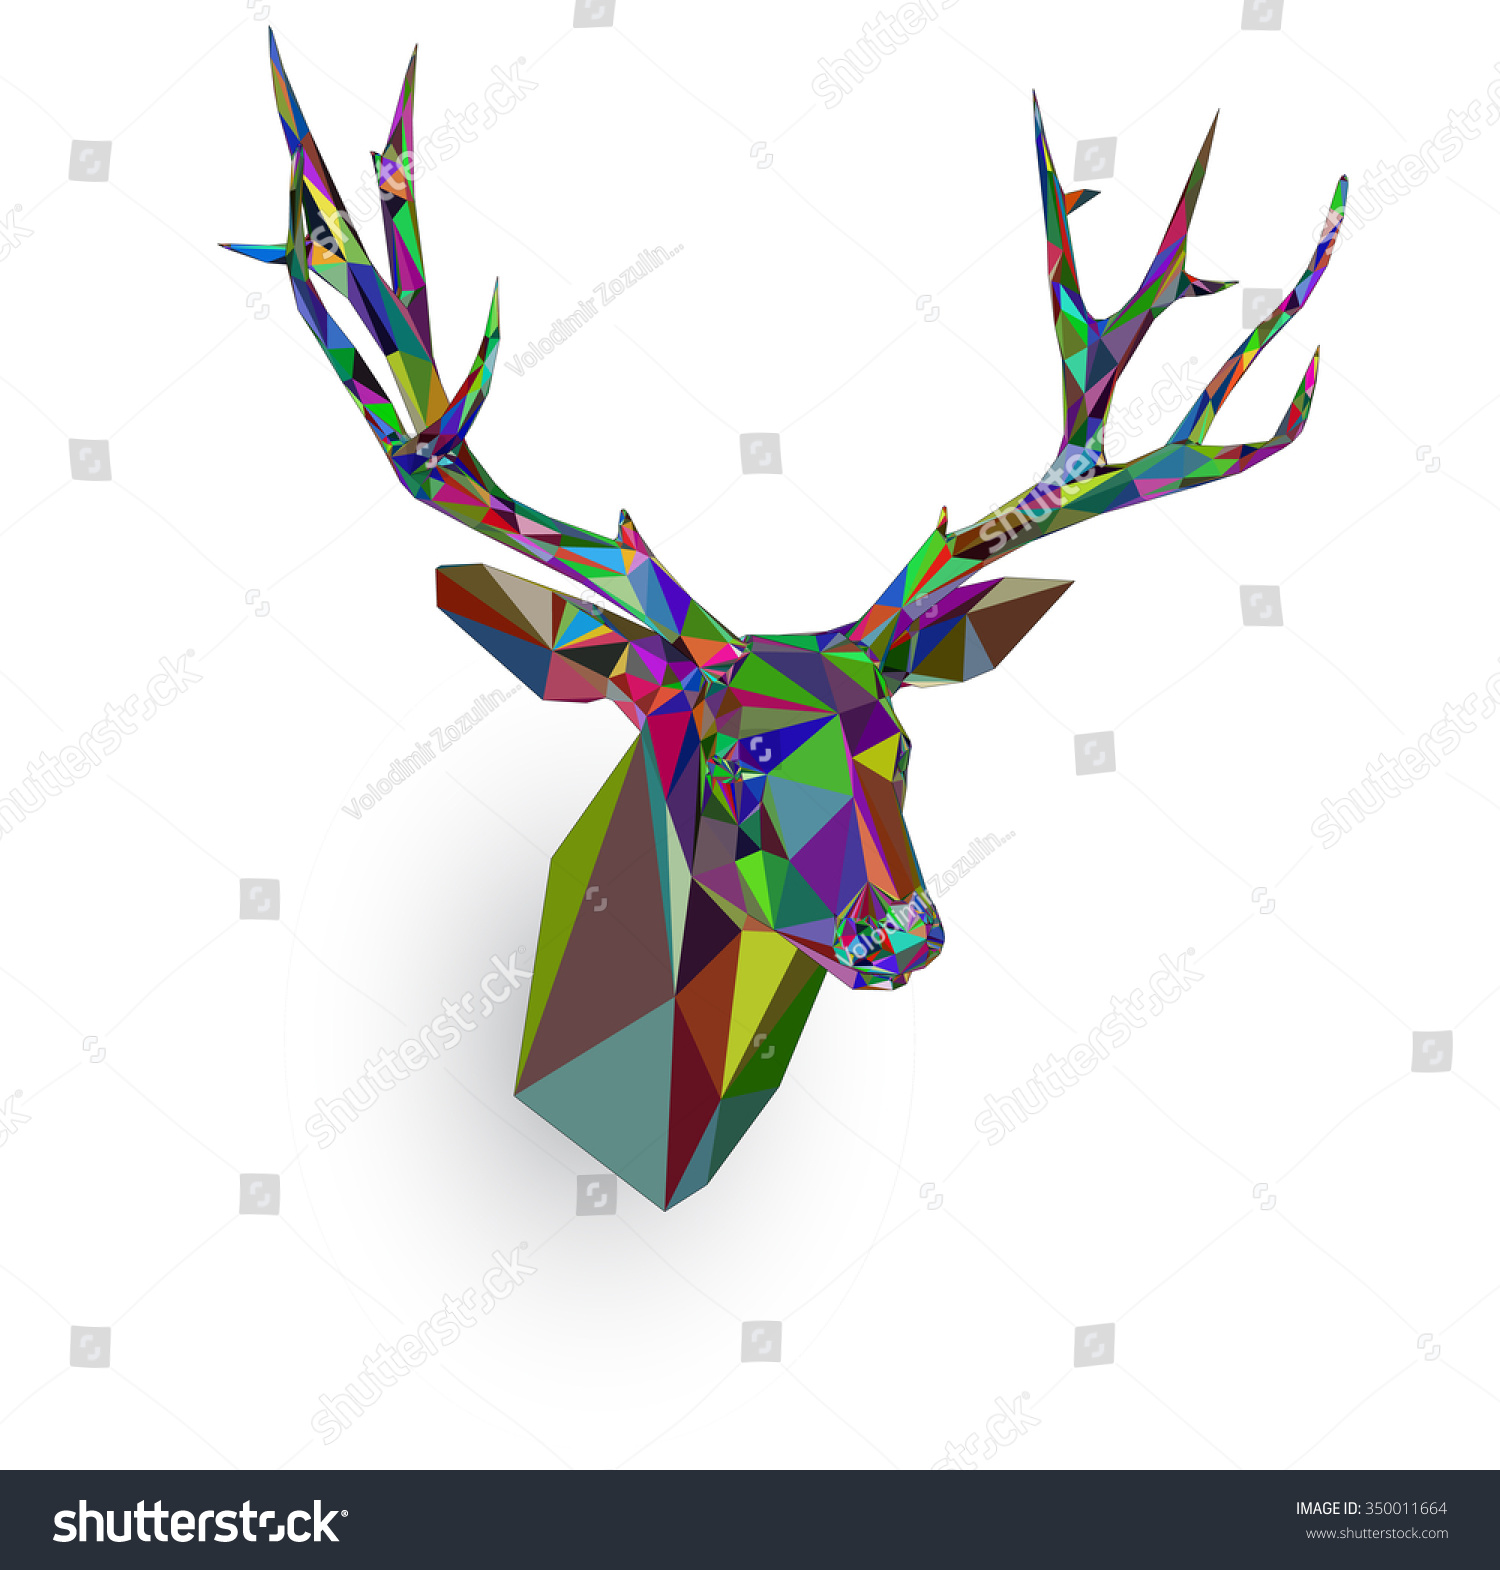 Deer Head Triangles Vector Stock Vector 350011664 - Shutterstock